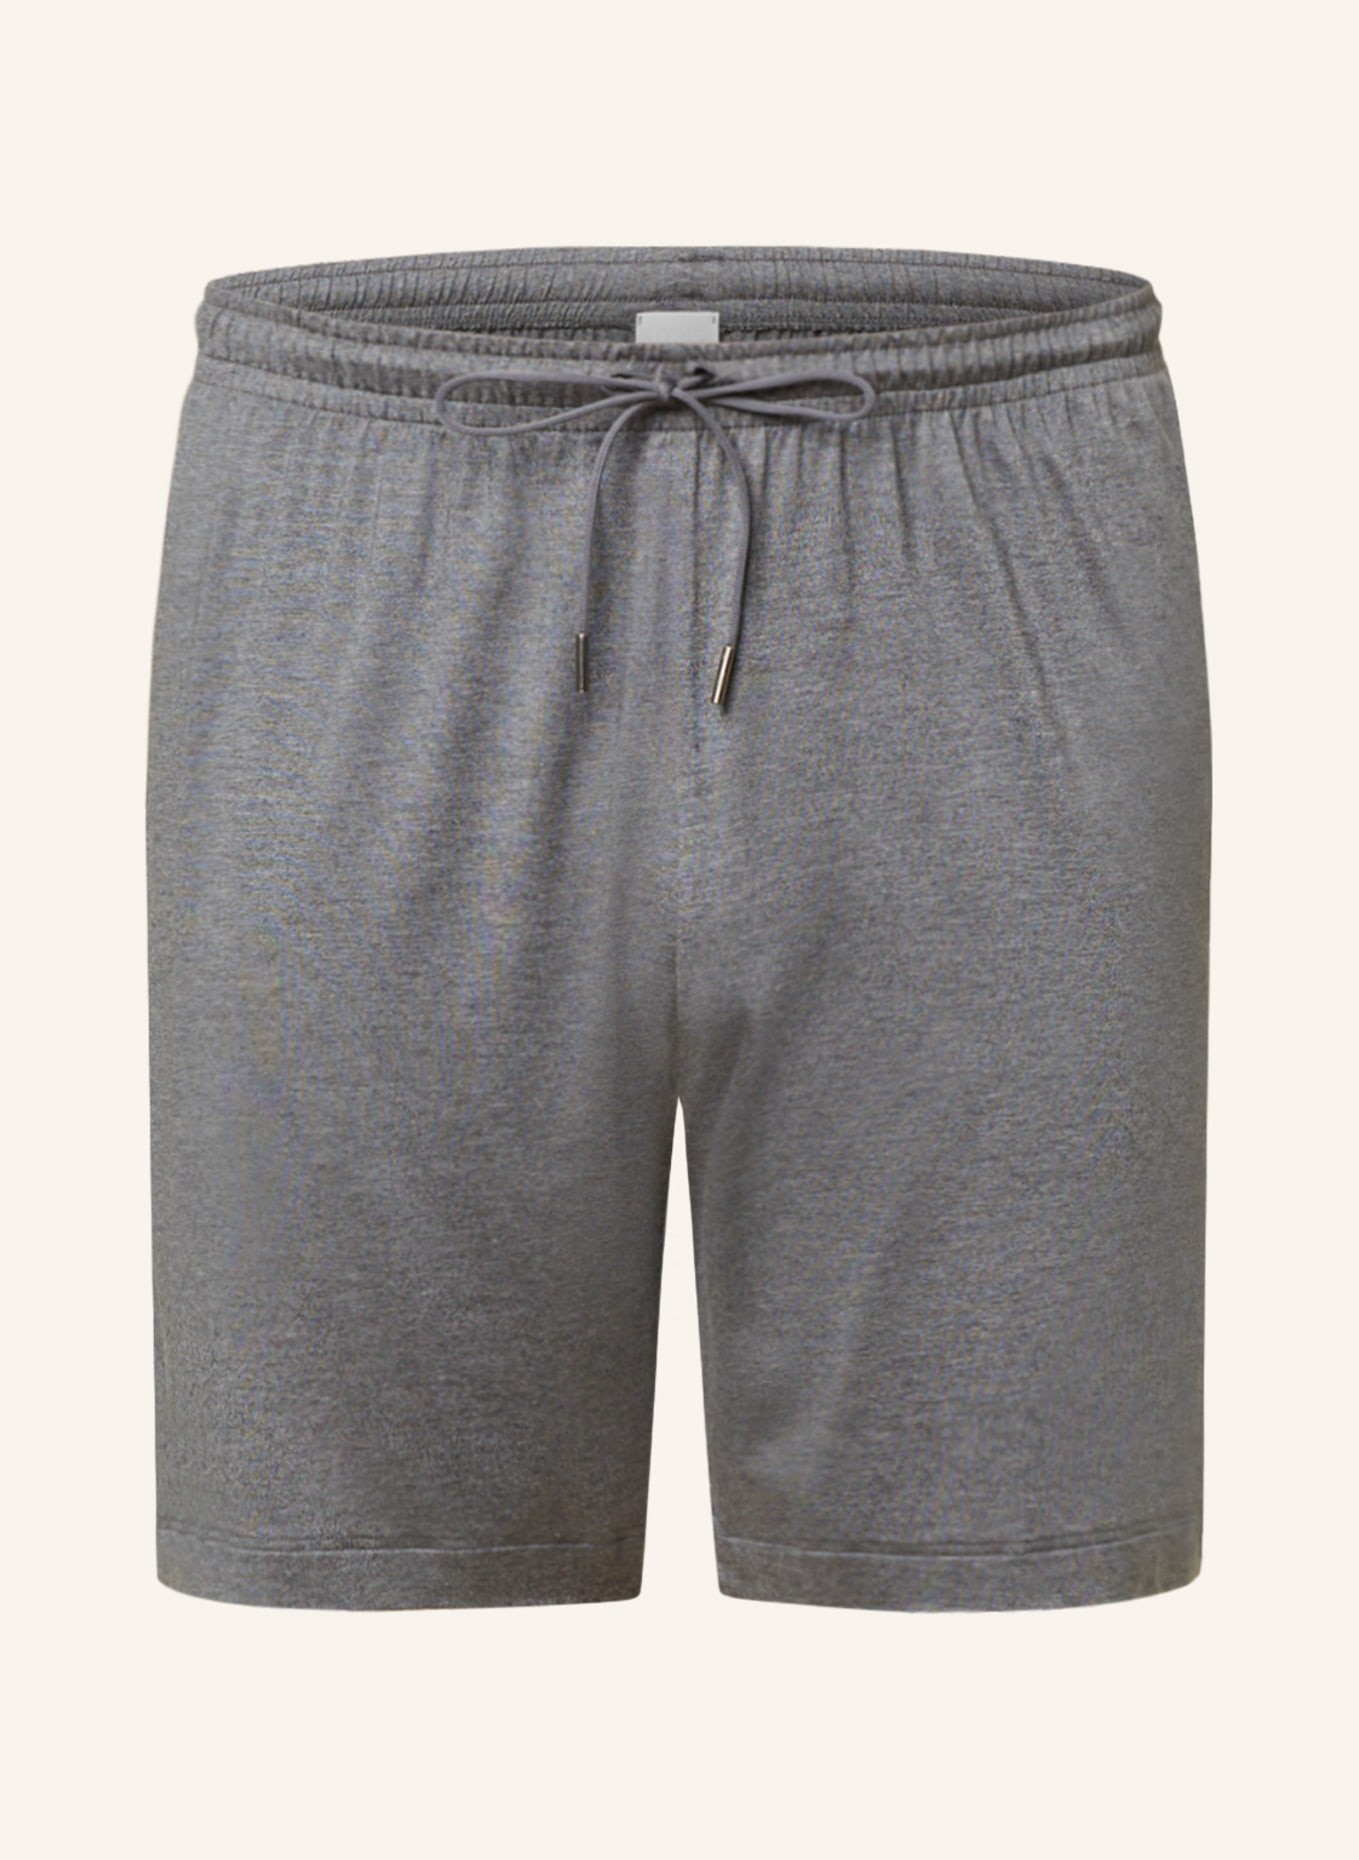 mey Pajama shorts series JEFFERSON, Color: GRAY (Image 1)